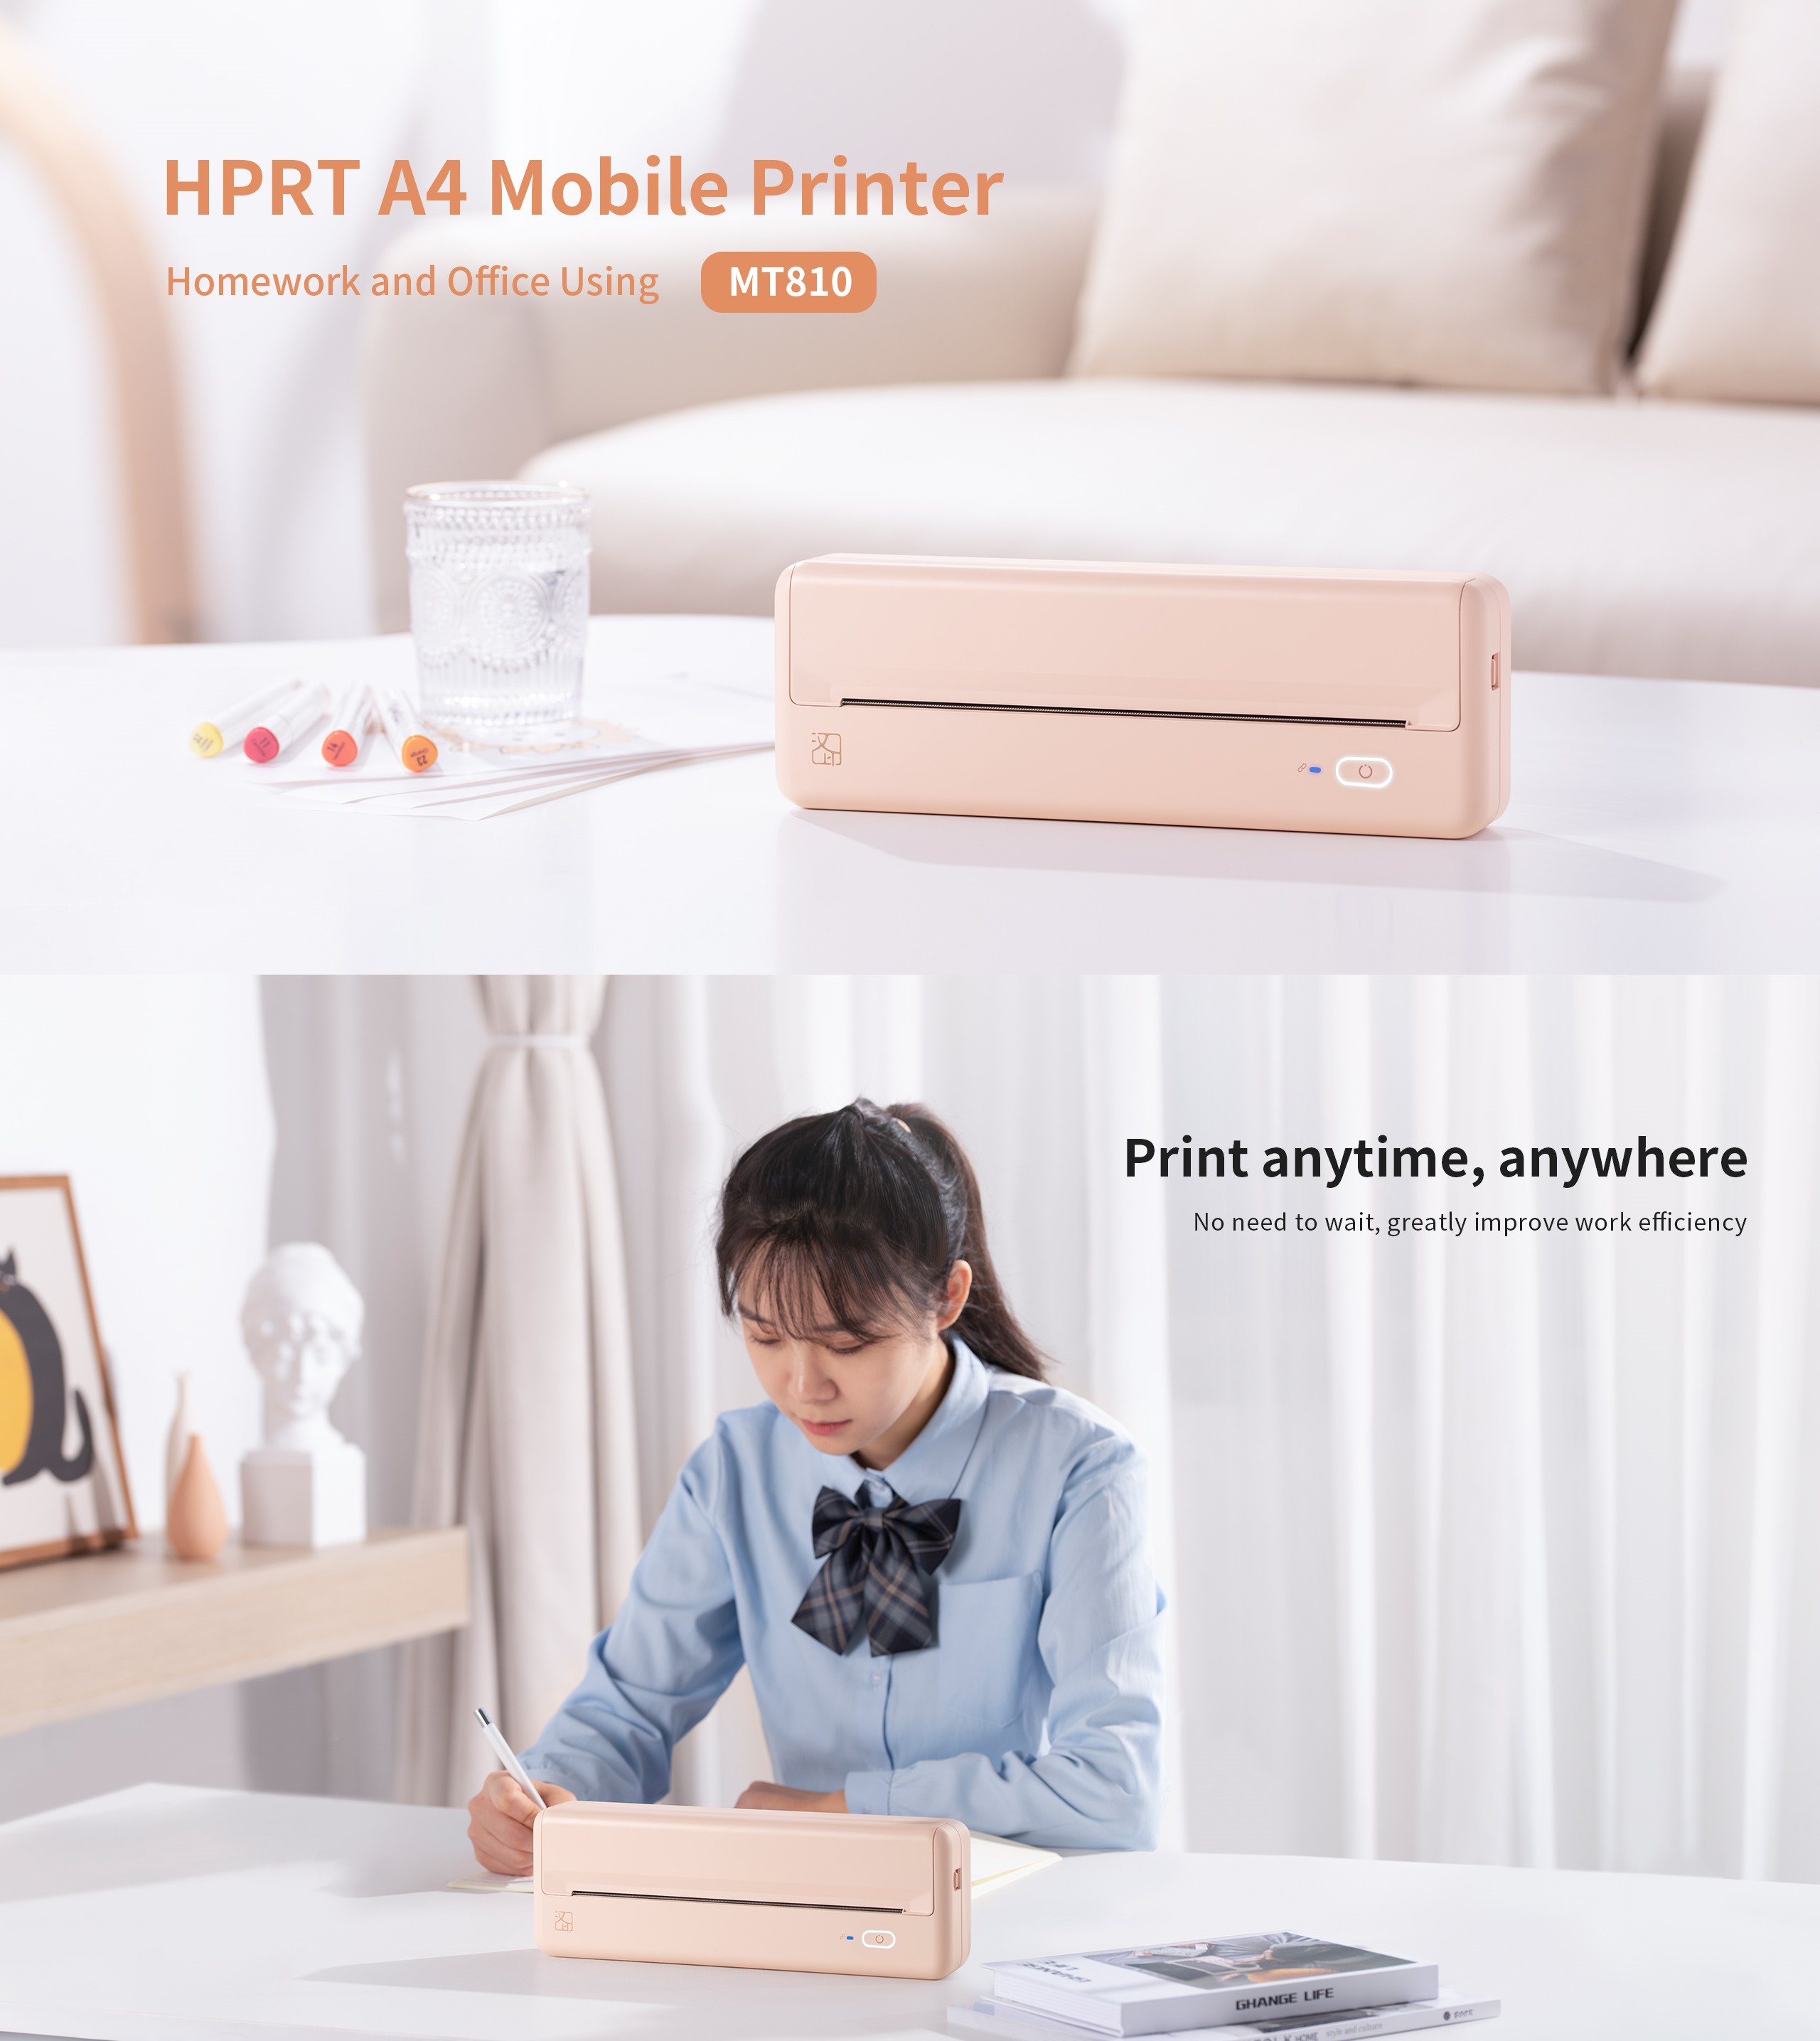 HPRT A4 Mobile Printer